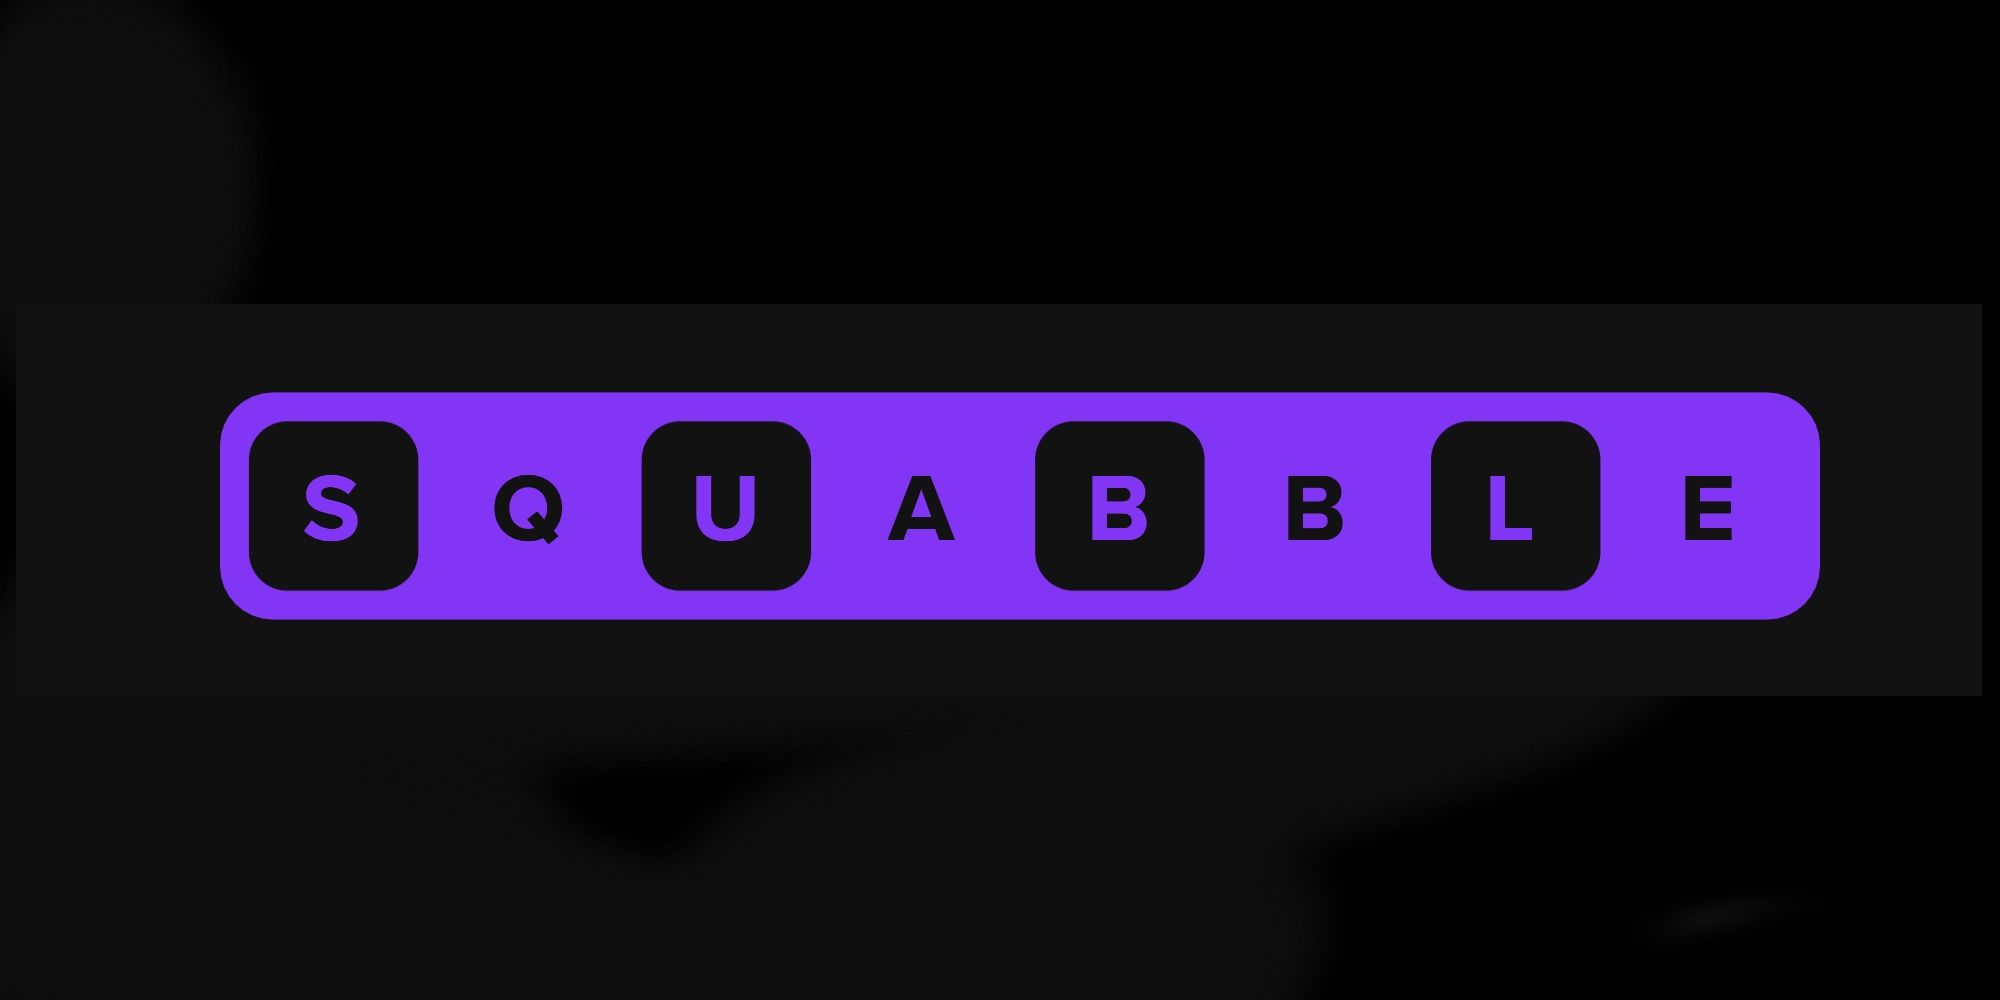 Squabble Turns Wordle Into A Battle Royale